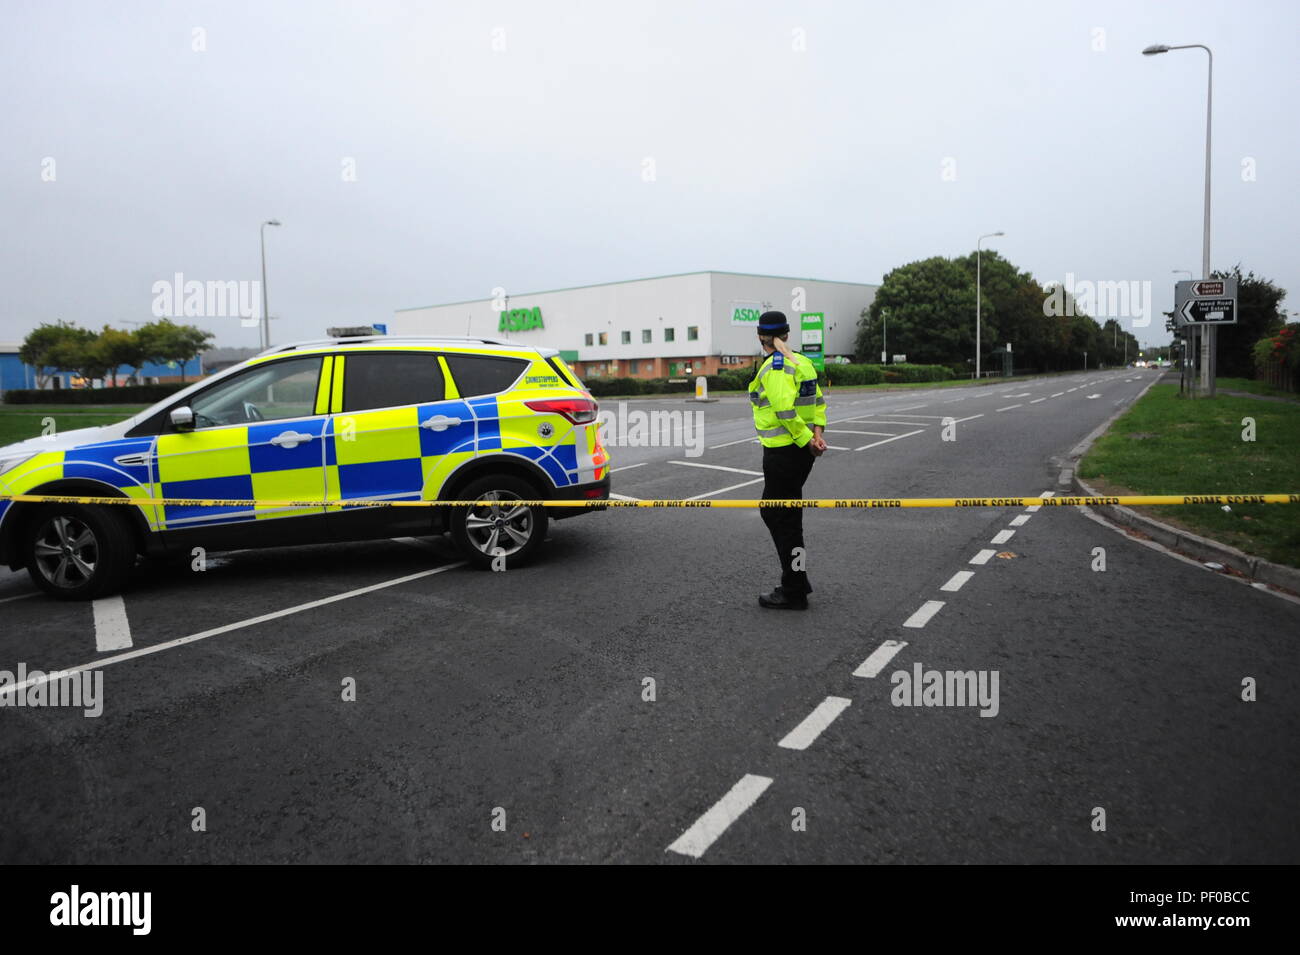 Der Supermarkt ASDA in Clevedon North Somerset frühen Samstag abend evakuiert wurde und die Bomb Squad genannt wurden/Robert Timoney/Alamy/Live/Aktuelles Stockfoto